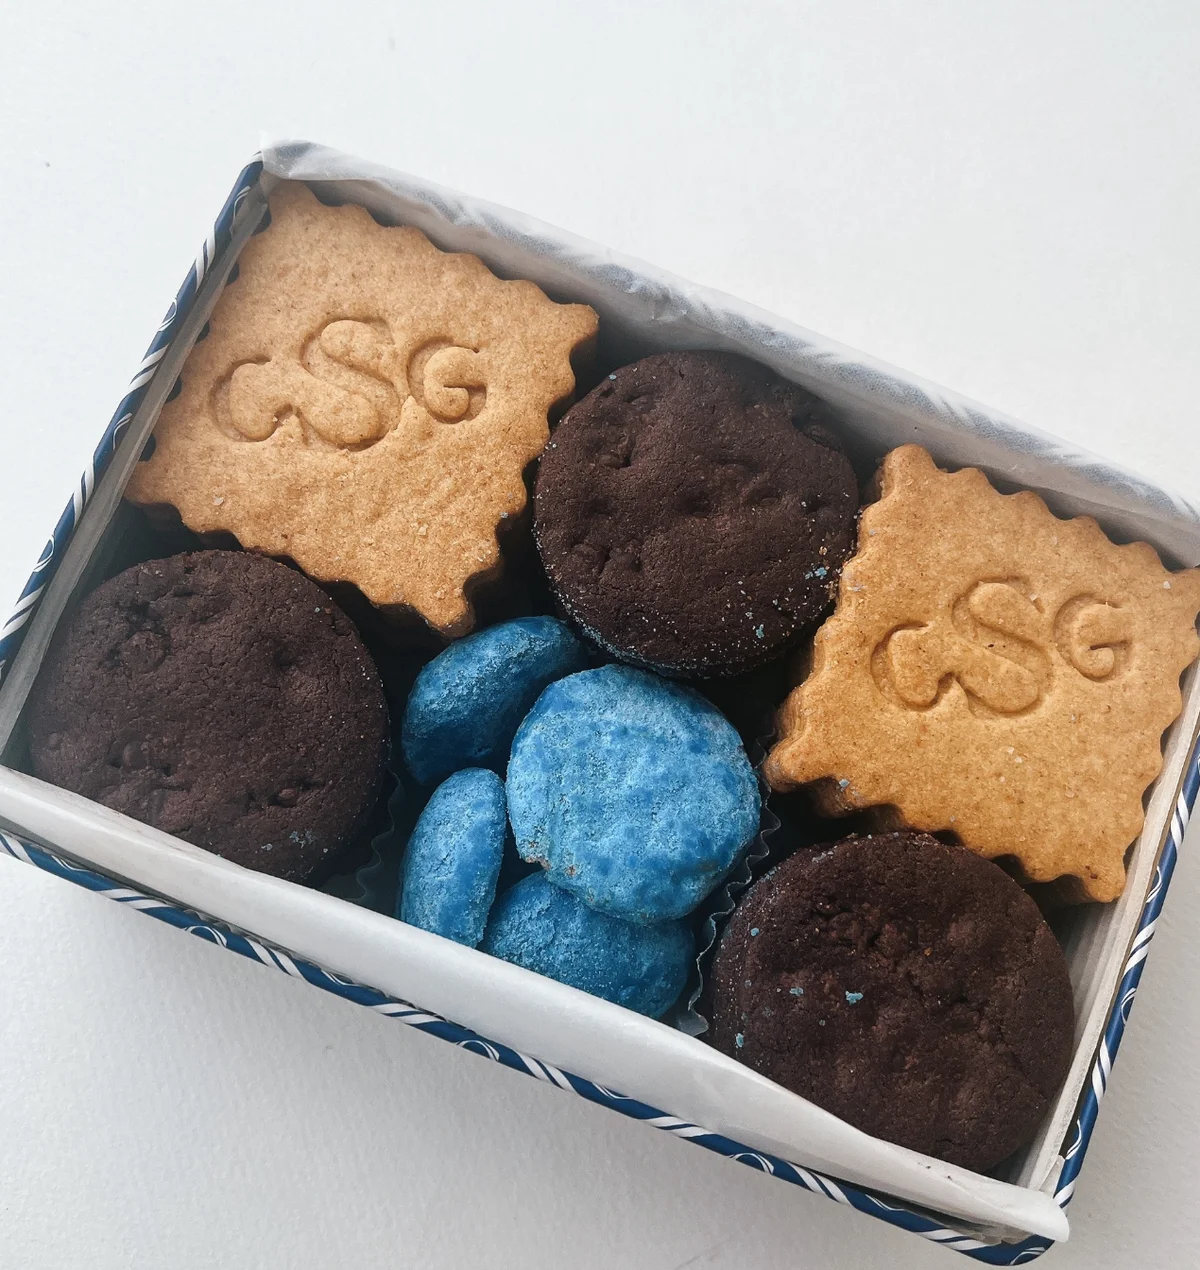 フランス語で幸せのおすそ分け、と名づけられたクッキー缶。中には、幸運のサムシングブルーも連想するような青をアクセントに、3種の焼き菓子がぎっしり！